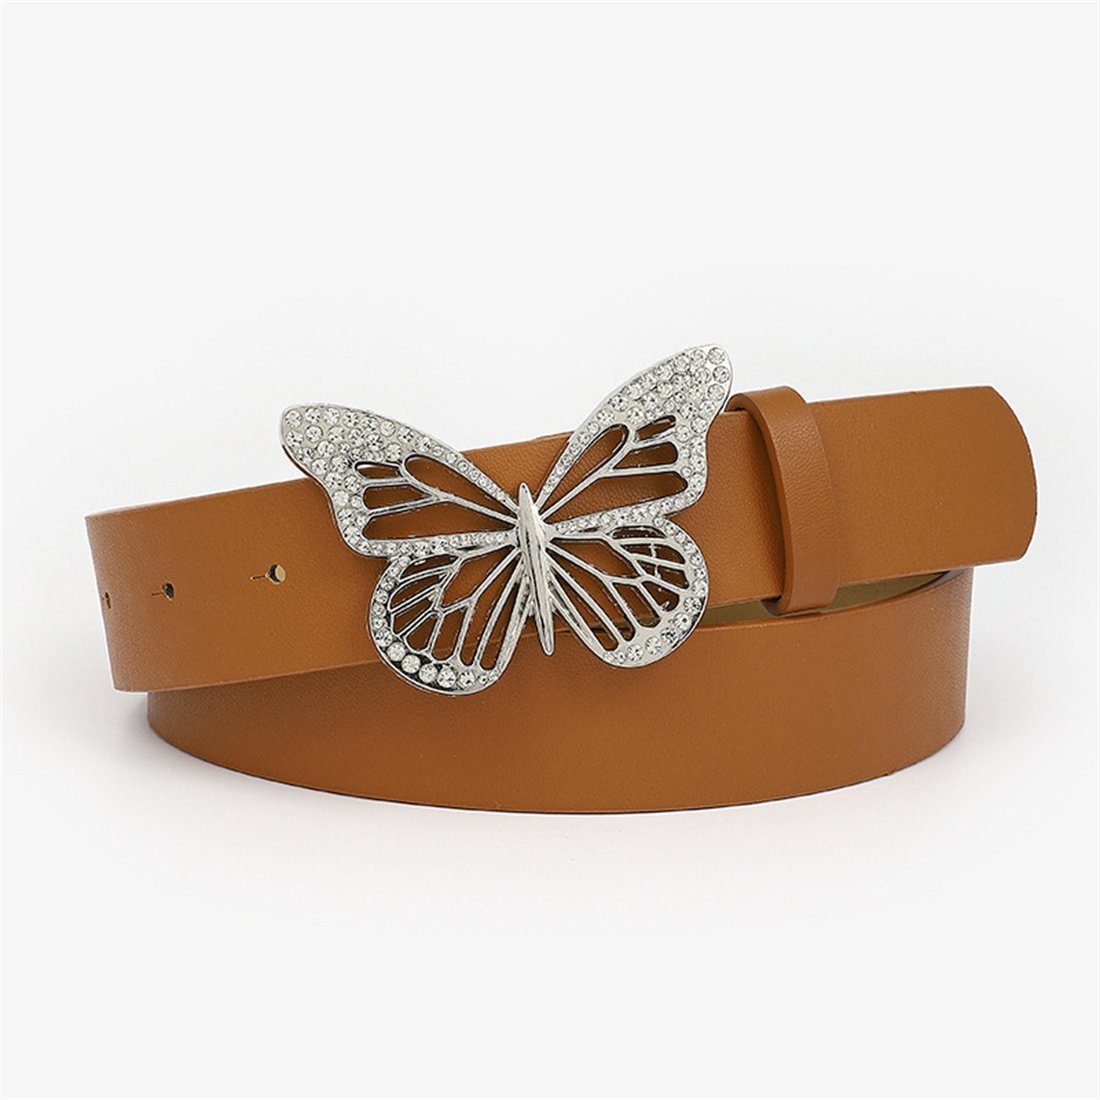 LYDMN Ledergürtel Damen Strassgürtel mit Schmetterlingsschnalle, Mode Gürtel Zubehör Braun